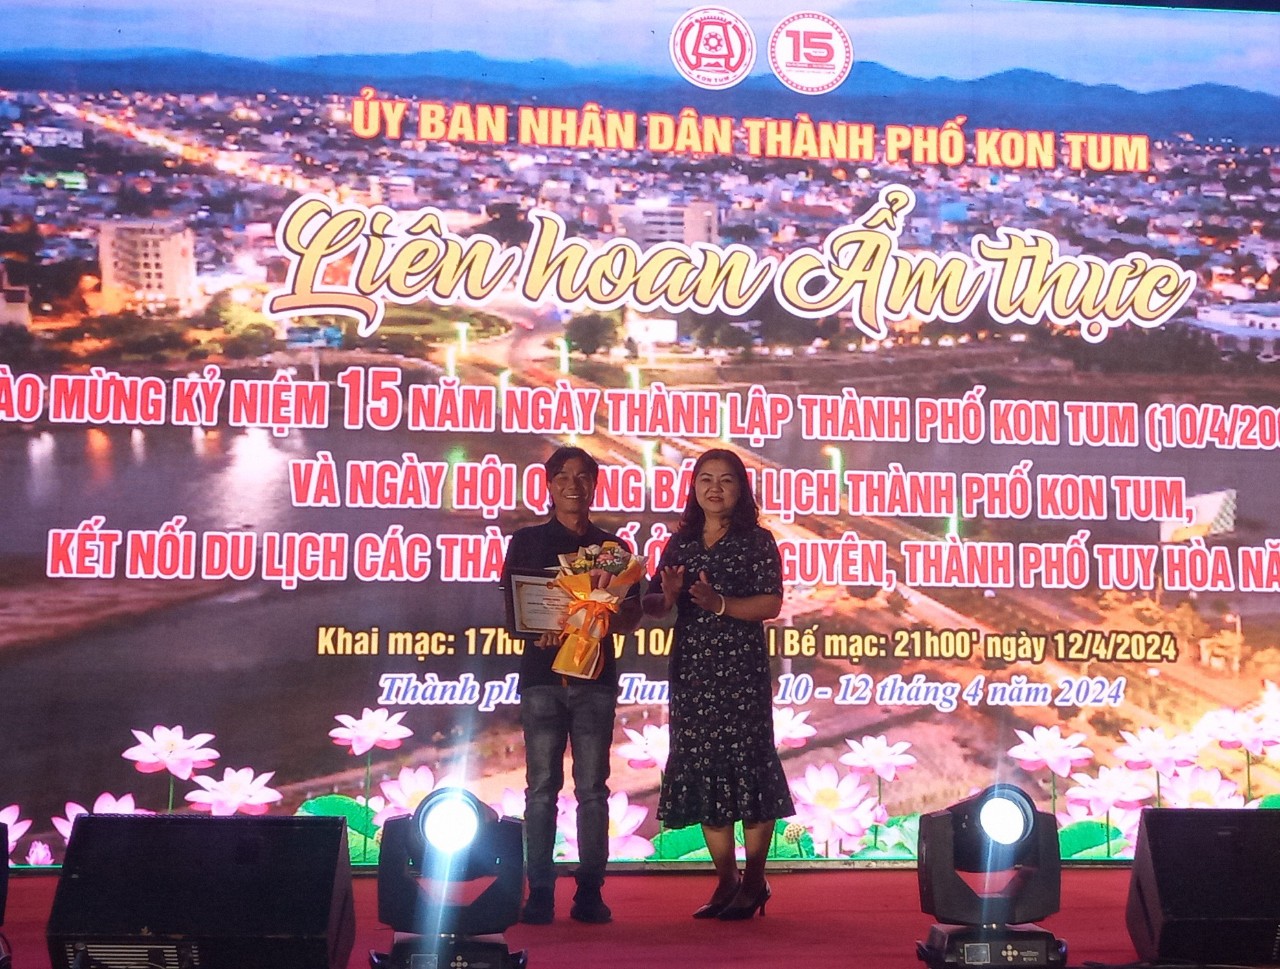 Thành phố Kon Tum tổ chức bế mạc Liên hoan ẩm thực năm 2024